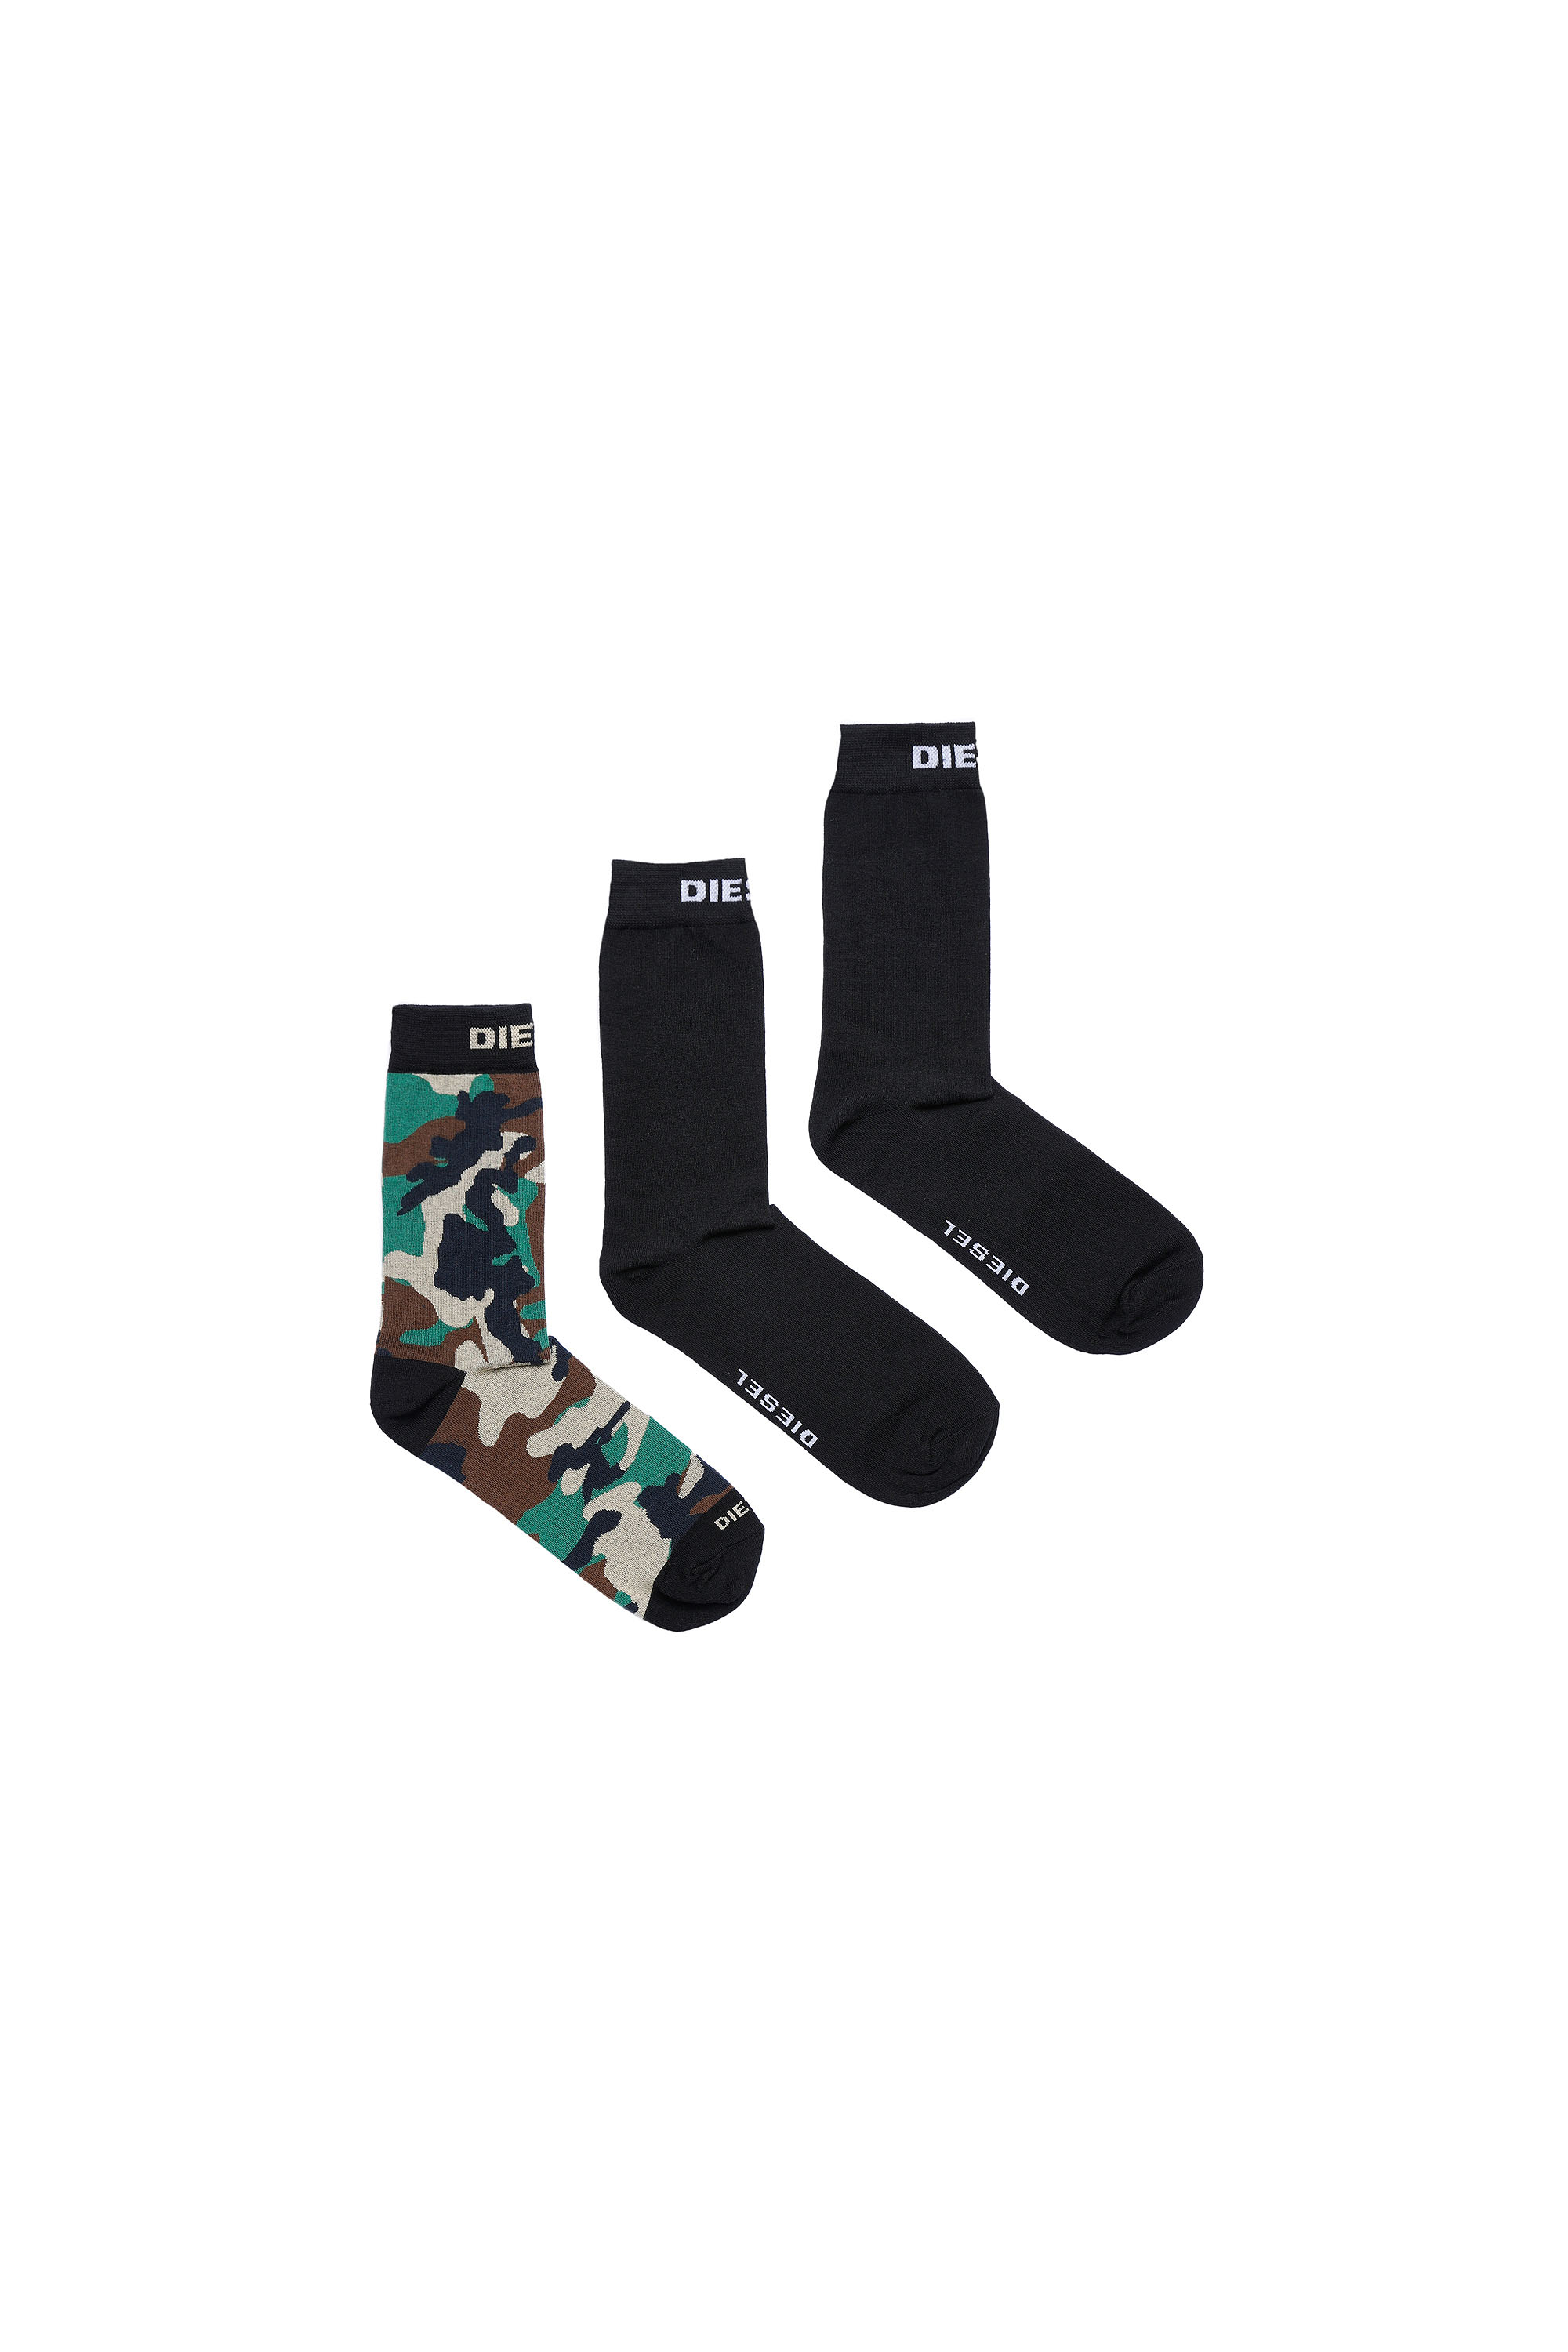 Diesel Socks - SKMHERMINETHREEPACK SOCKS multicolor